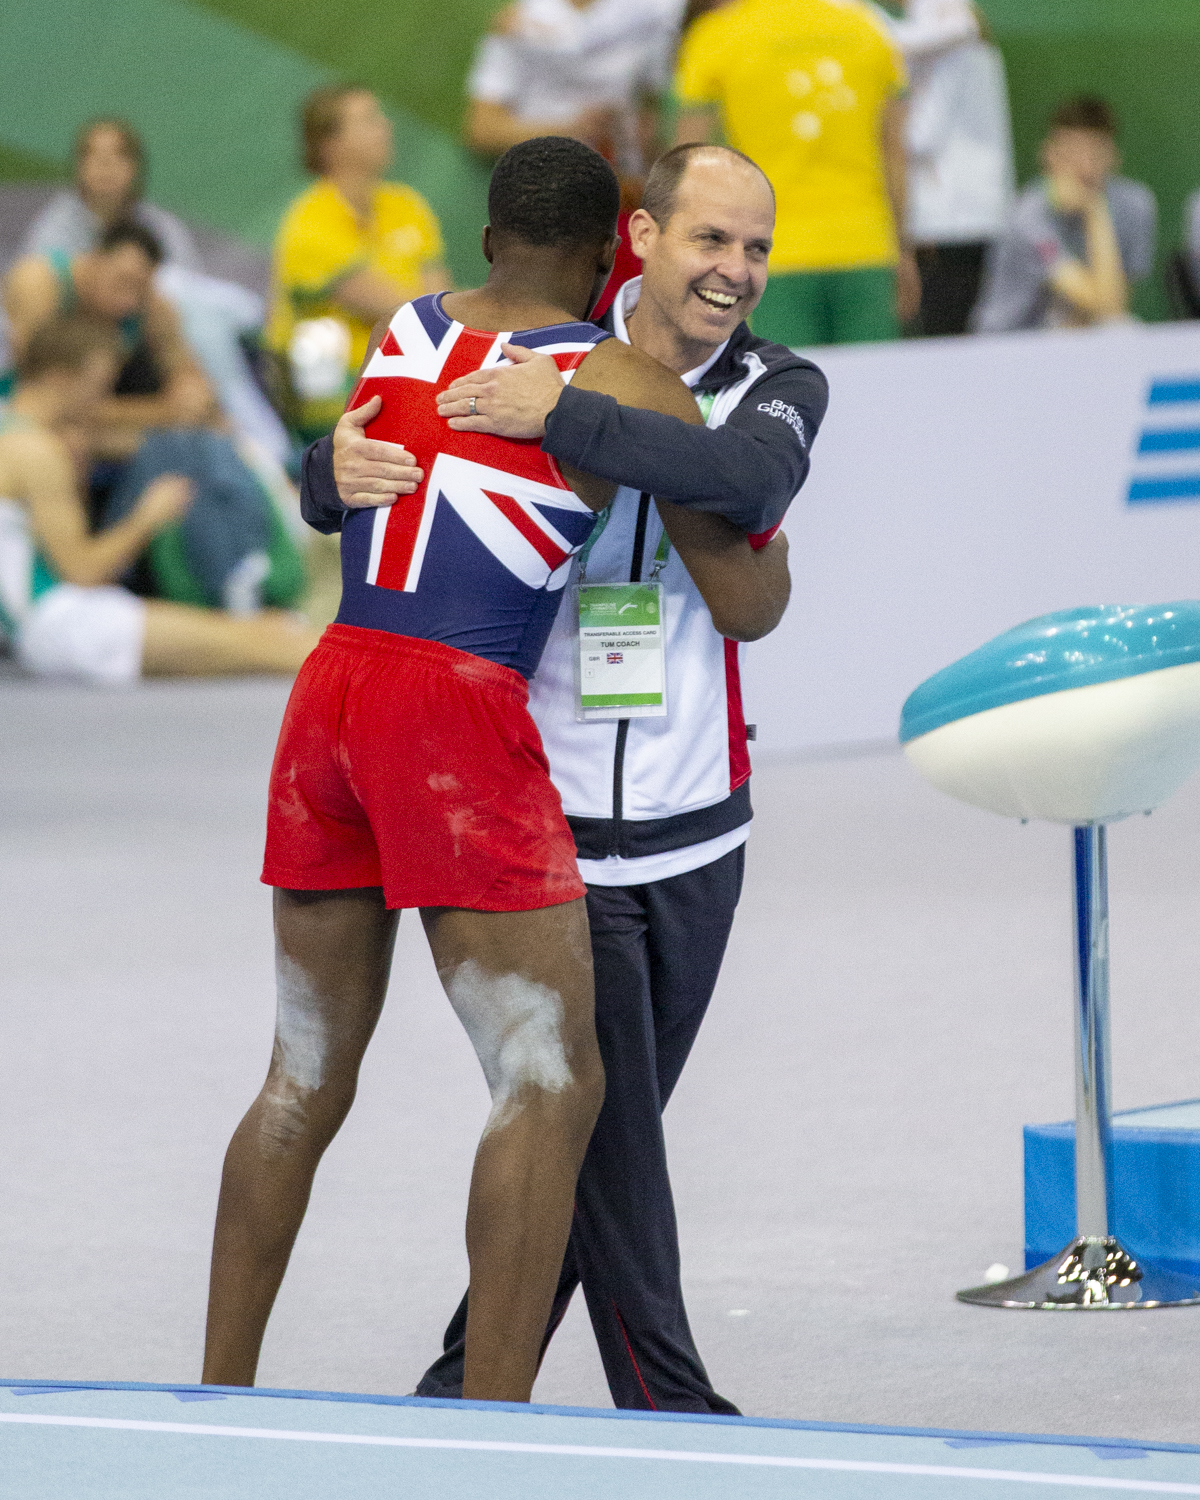 Photographie couleur du britannique Dominic Mensah, champion du monde de Tumbling par équipe, et de son entraineur s'enlaçant avec un visage heureux après le passage en Tumbling